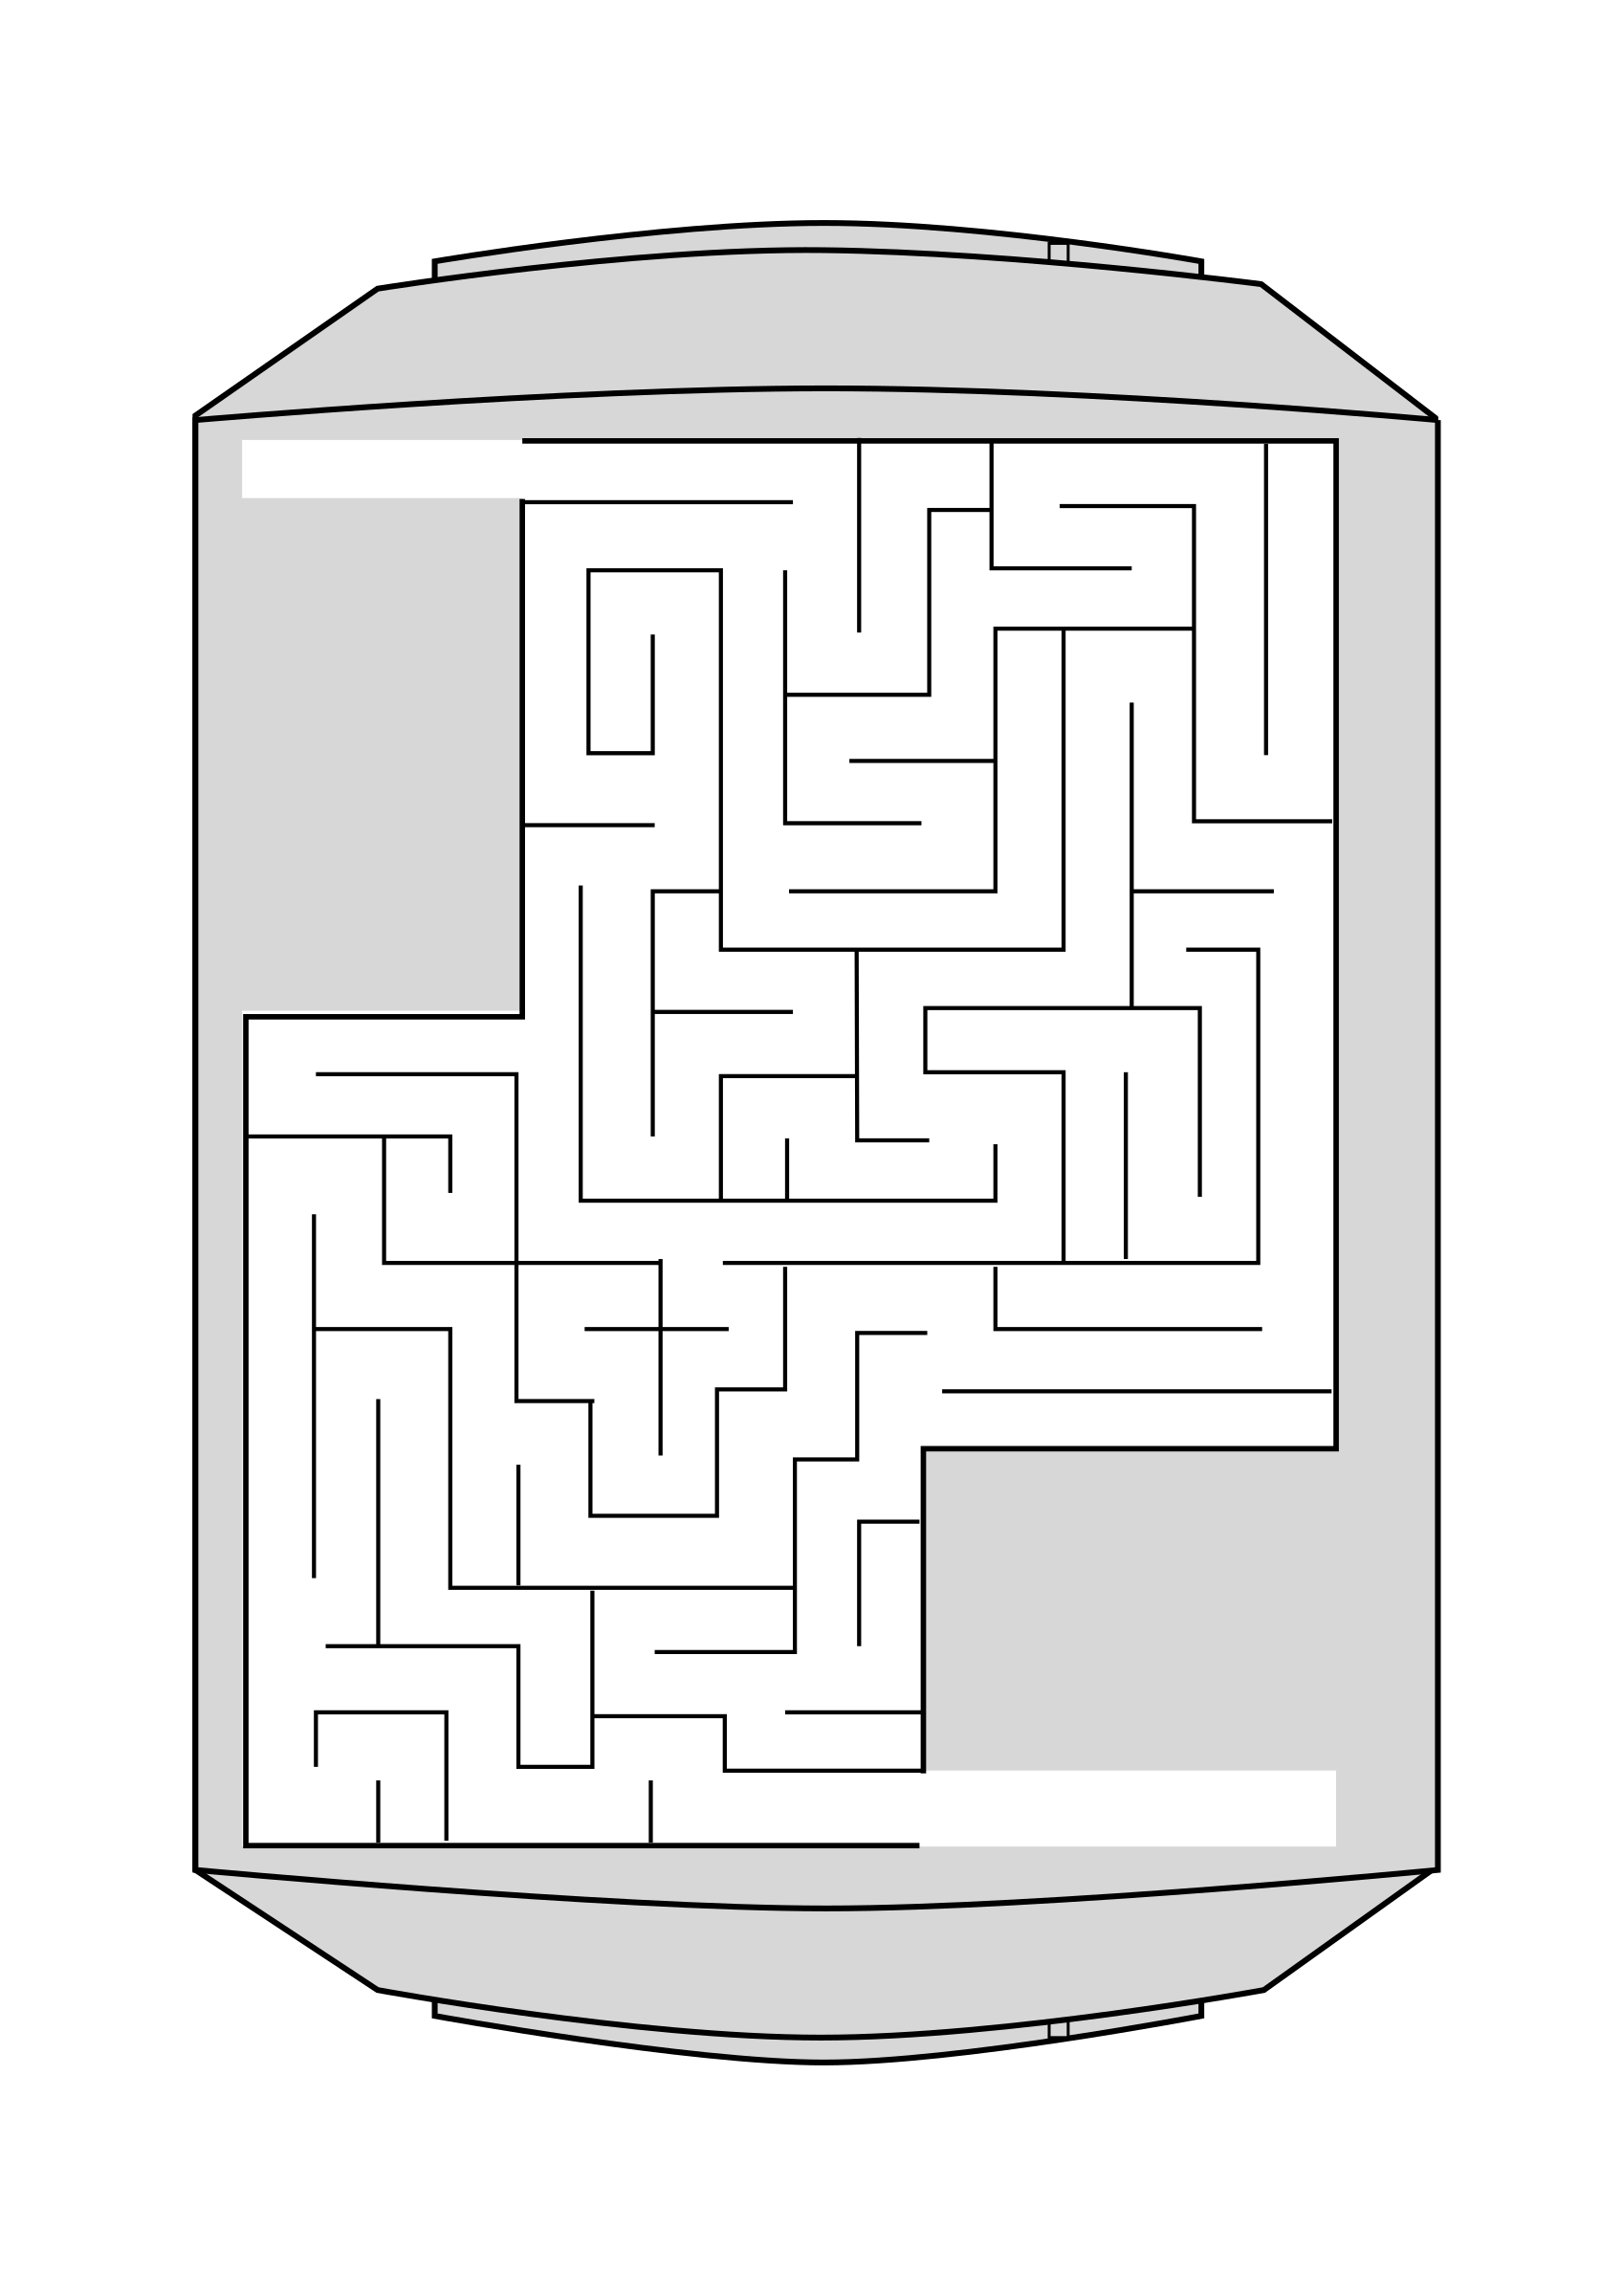 Maze activity sheet